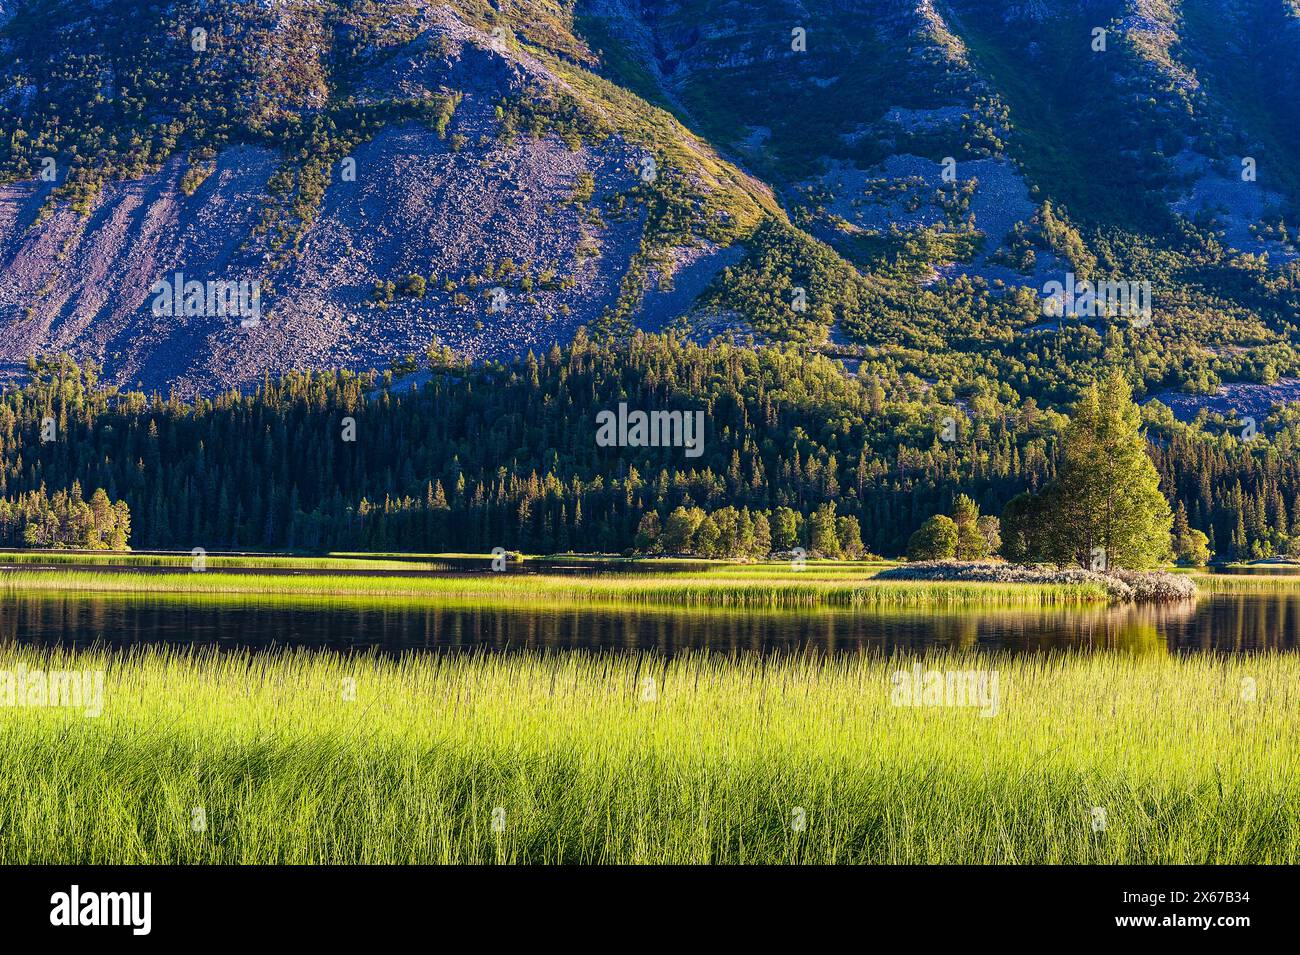 Un lac entouré d'herbe verte luxuriante avec des montagnes majestueuses en arrière-plan, créant une vue panoramique de la beauté de la nature. Banque D'Images